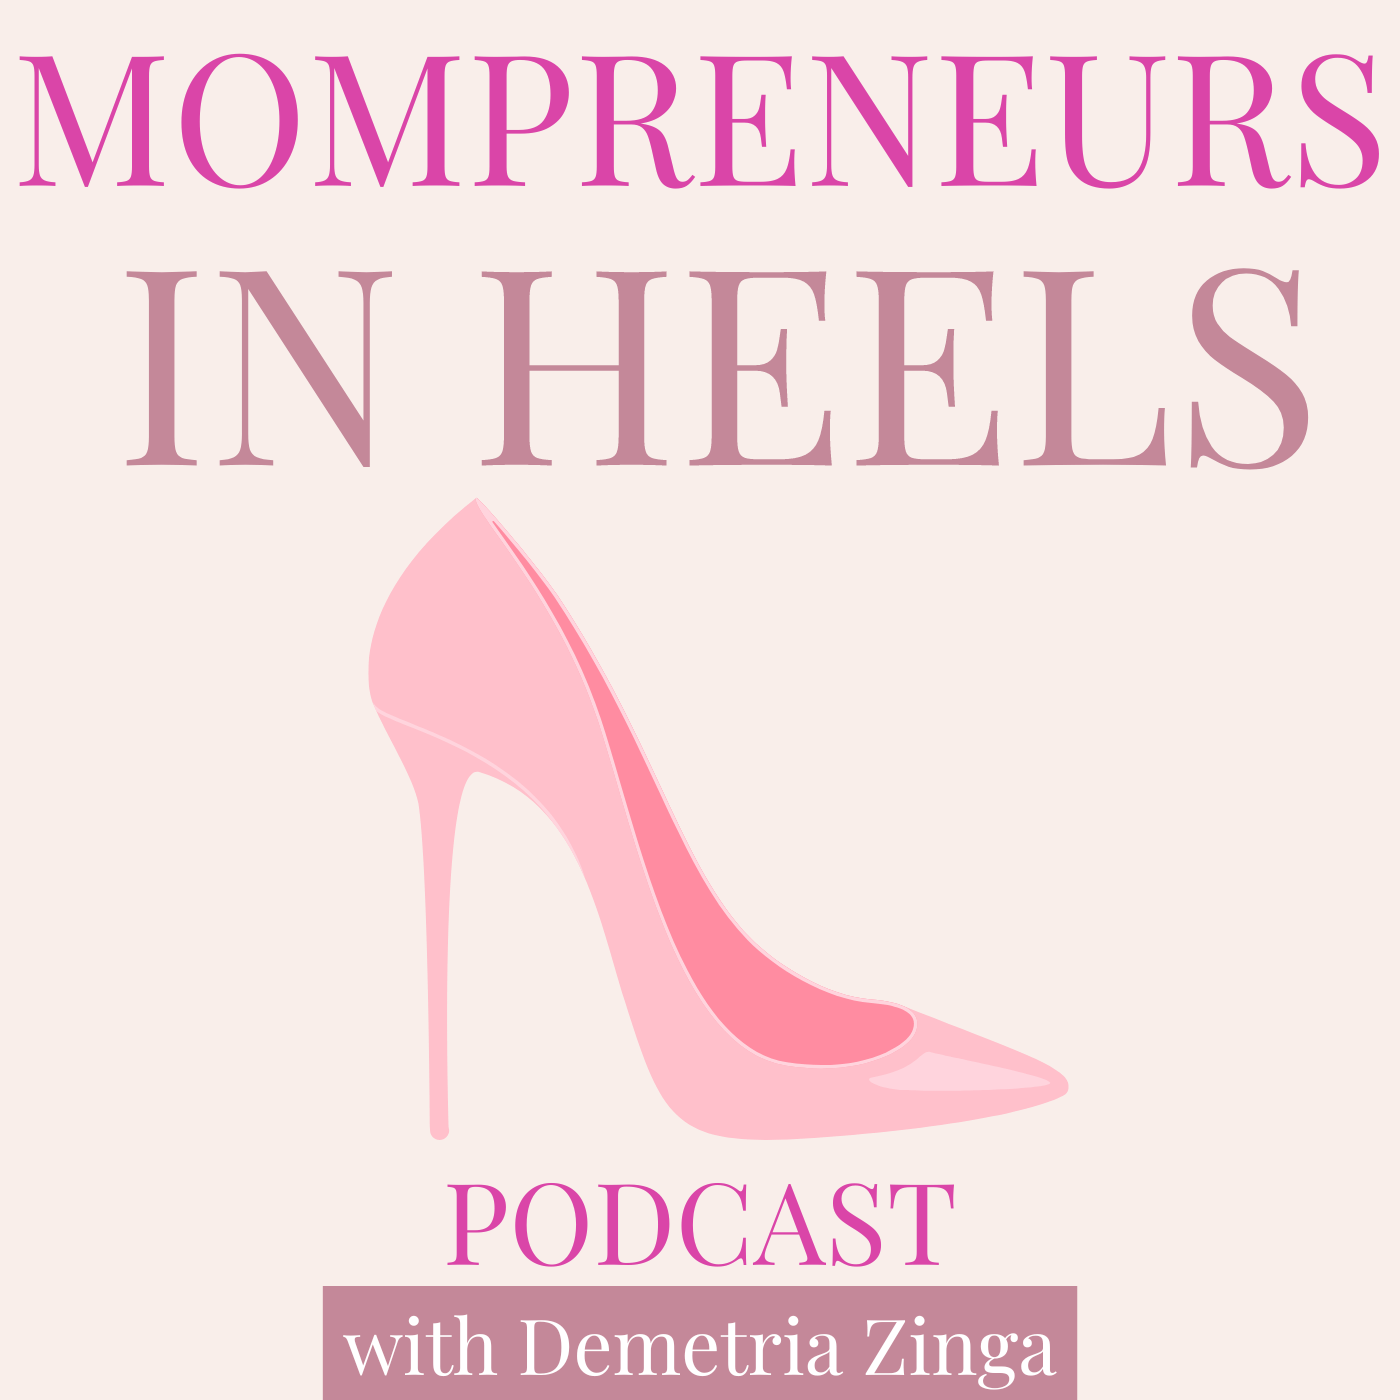 Mompreneurs in Heels Podcast